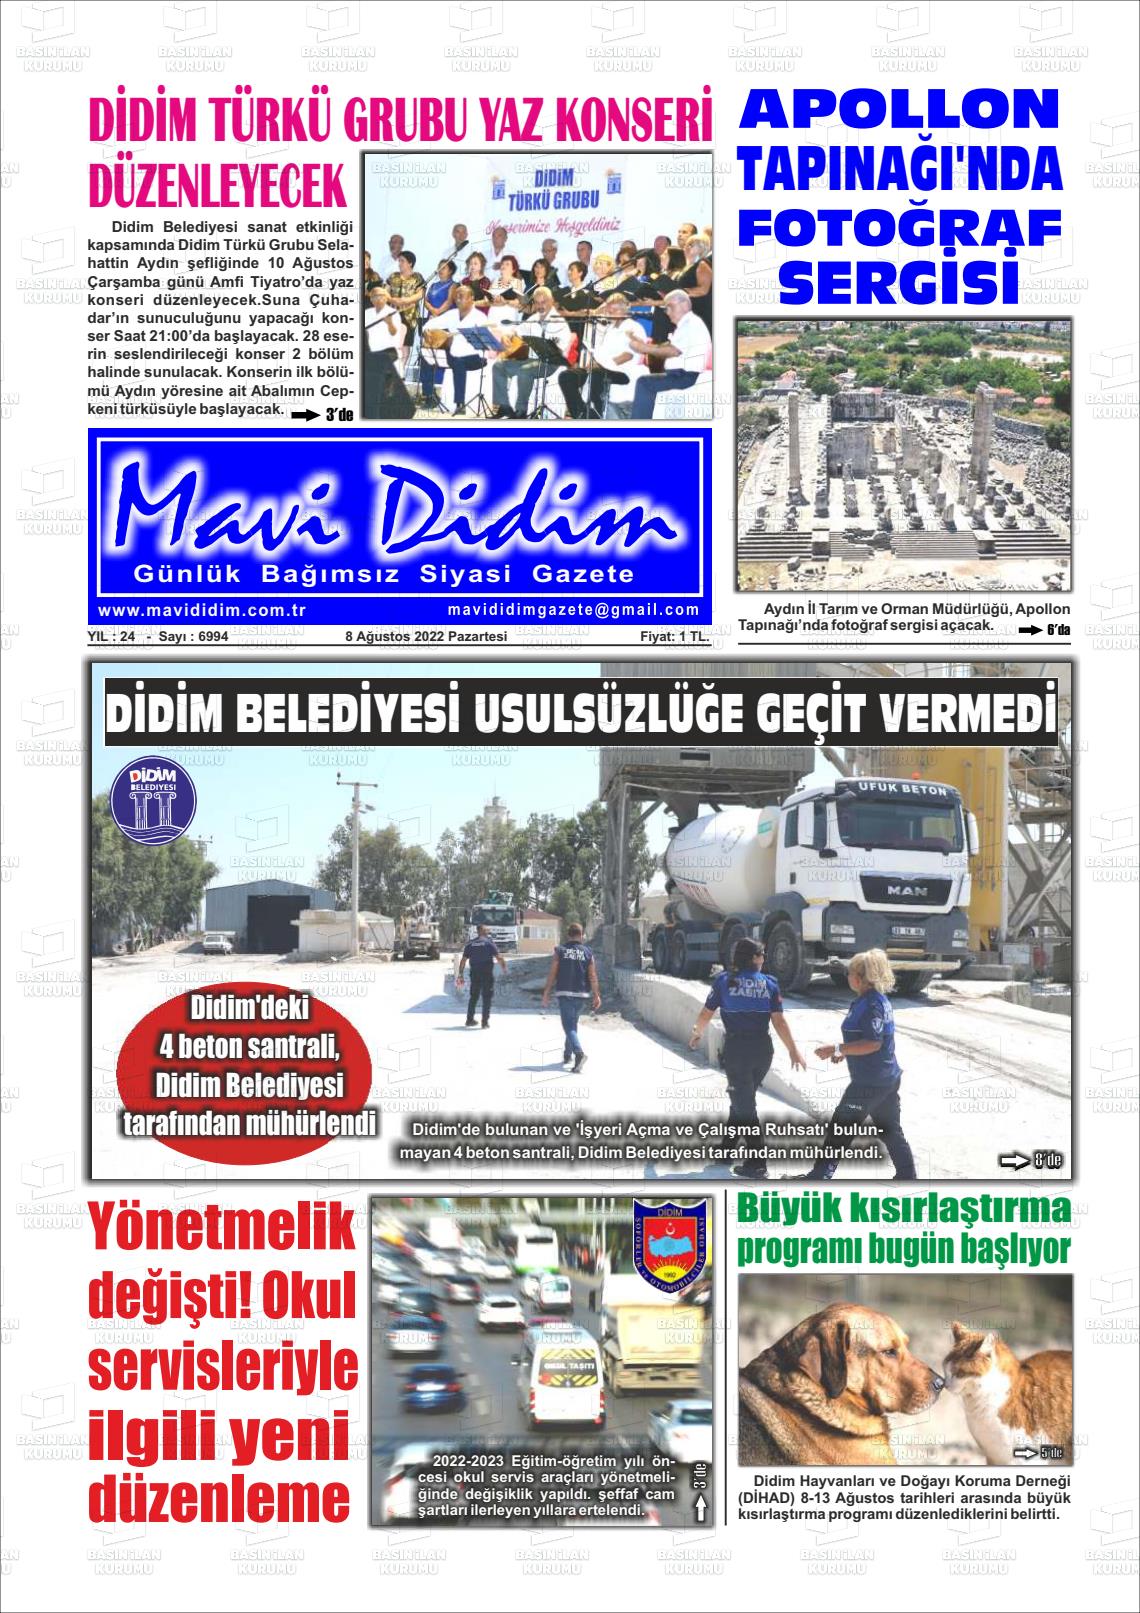 08 Ağustos 2022 Mavi Didim Gazete Manşeti